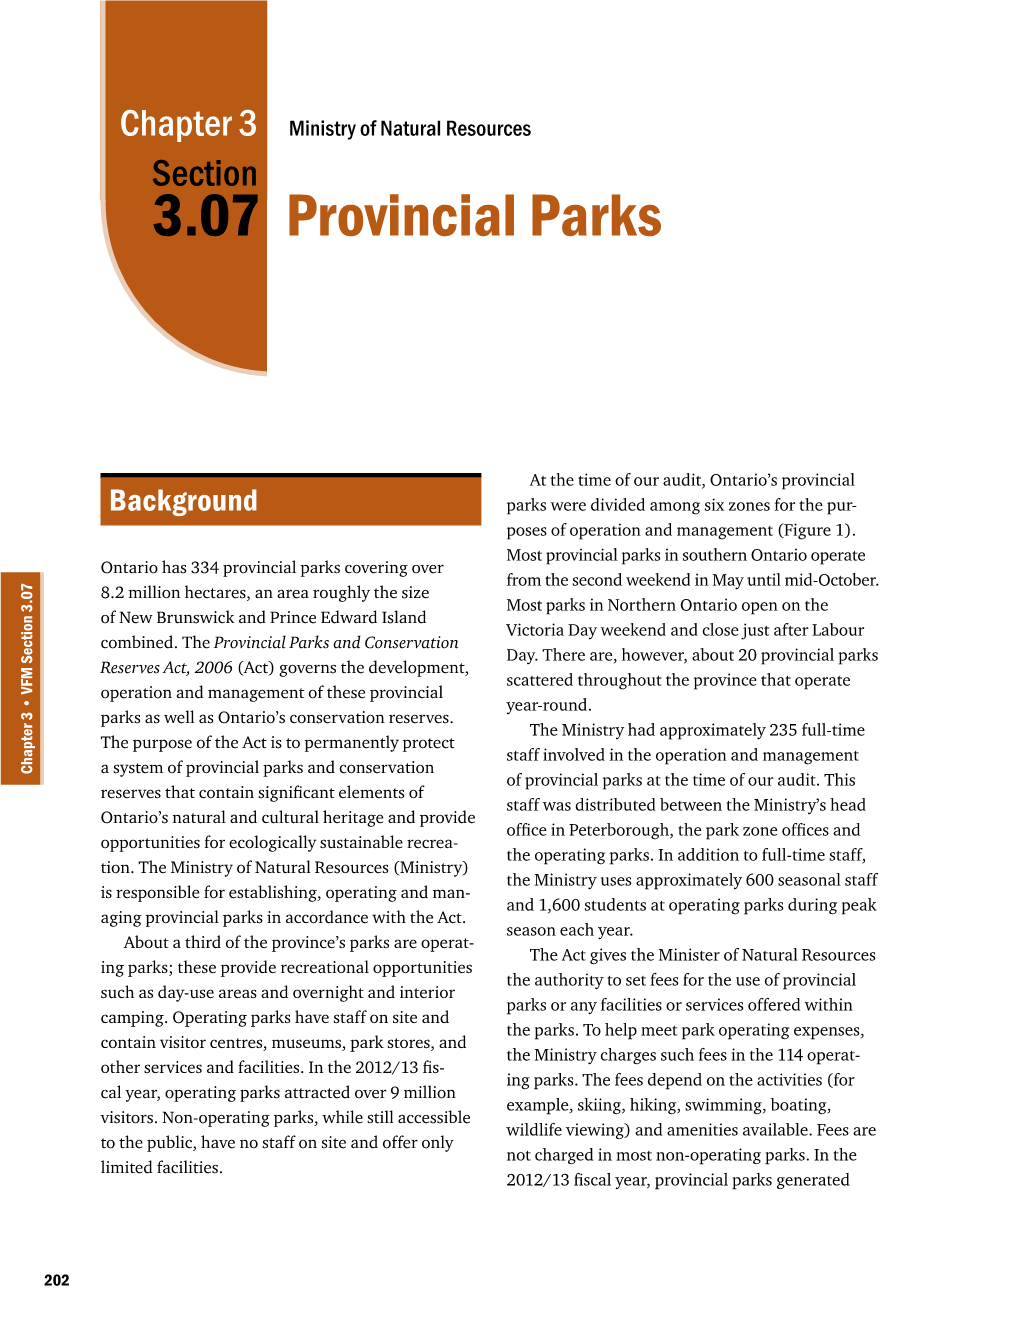 3.07: Provincial Parks